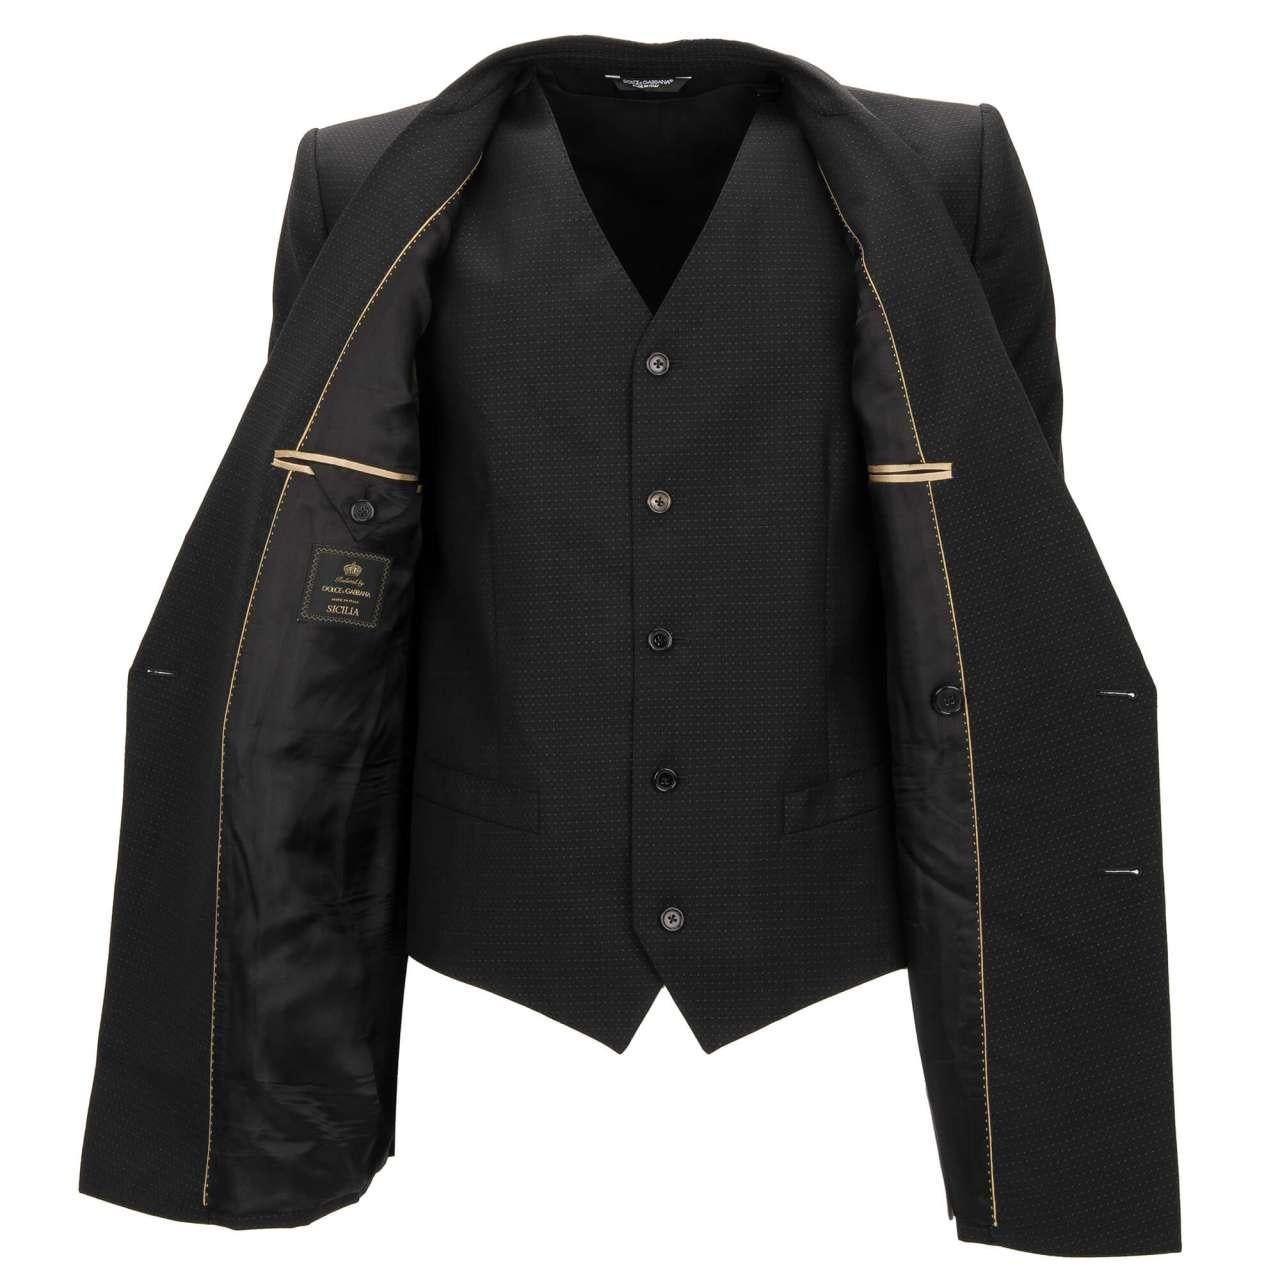 Dolce & Gabbana Jacket with Vest SICILIA Embroidered Logo Crown Black 48 38 M For Sale 3